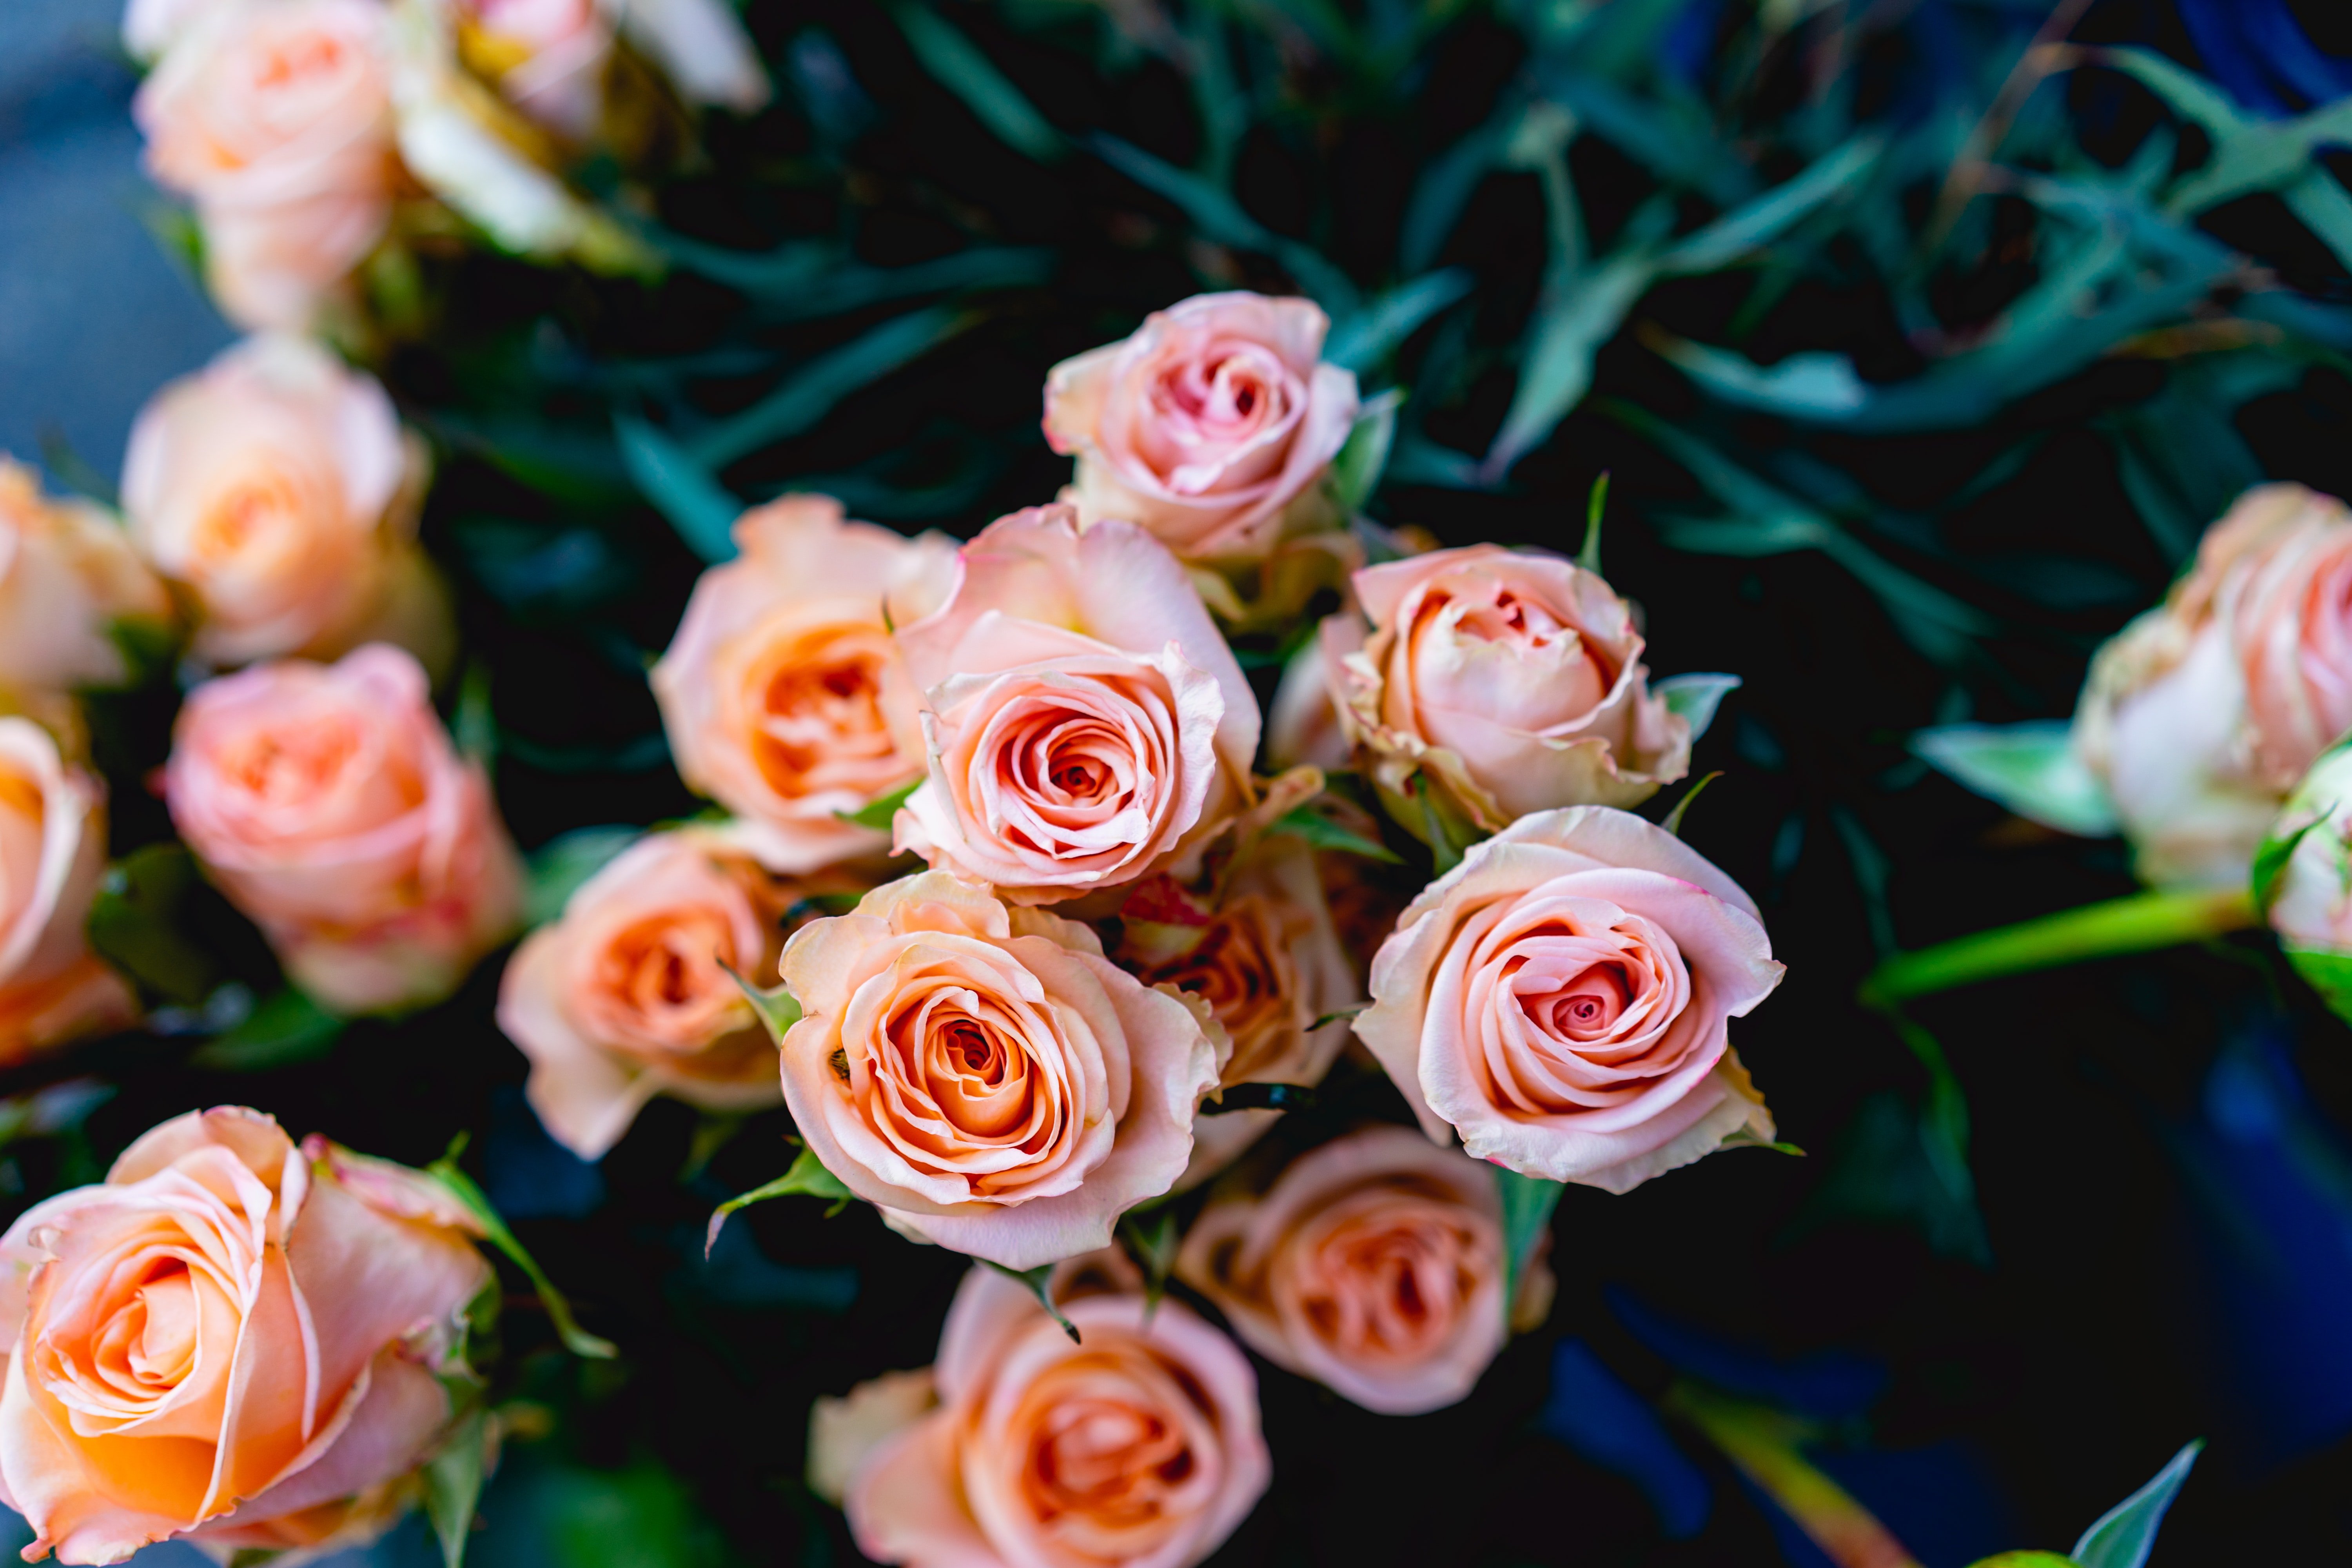 Agatha entschuldigte sich bei Abby und teilte die Details des Verkäufers mit, der die wunderschönen Rosen verkauft hatte. | Quelle: Unsplash